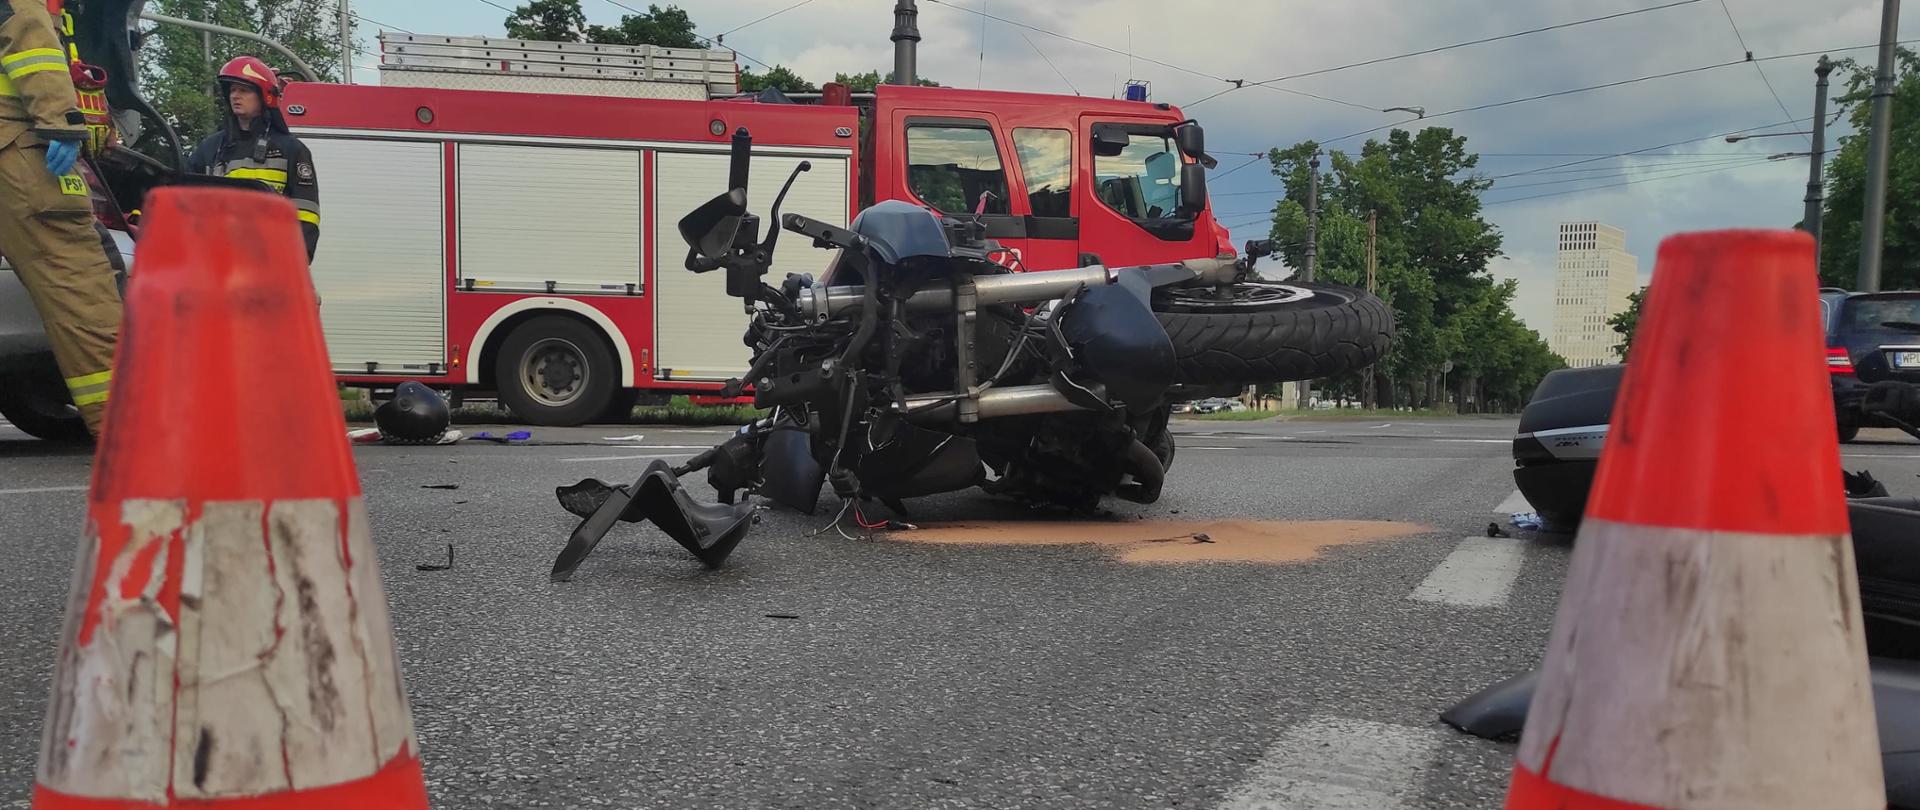 Na zdjęciu widoczne stożki ostrzegawcze, ukoszony motocykl oraz wóz straży pożarnej.